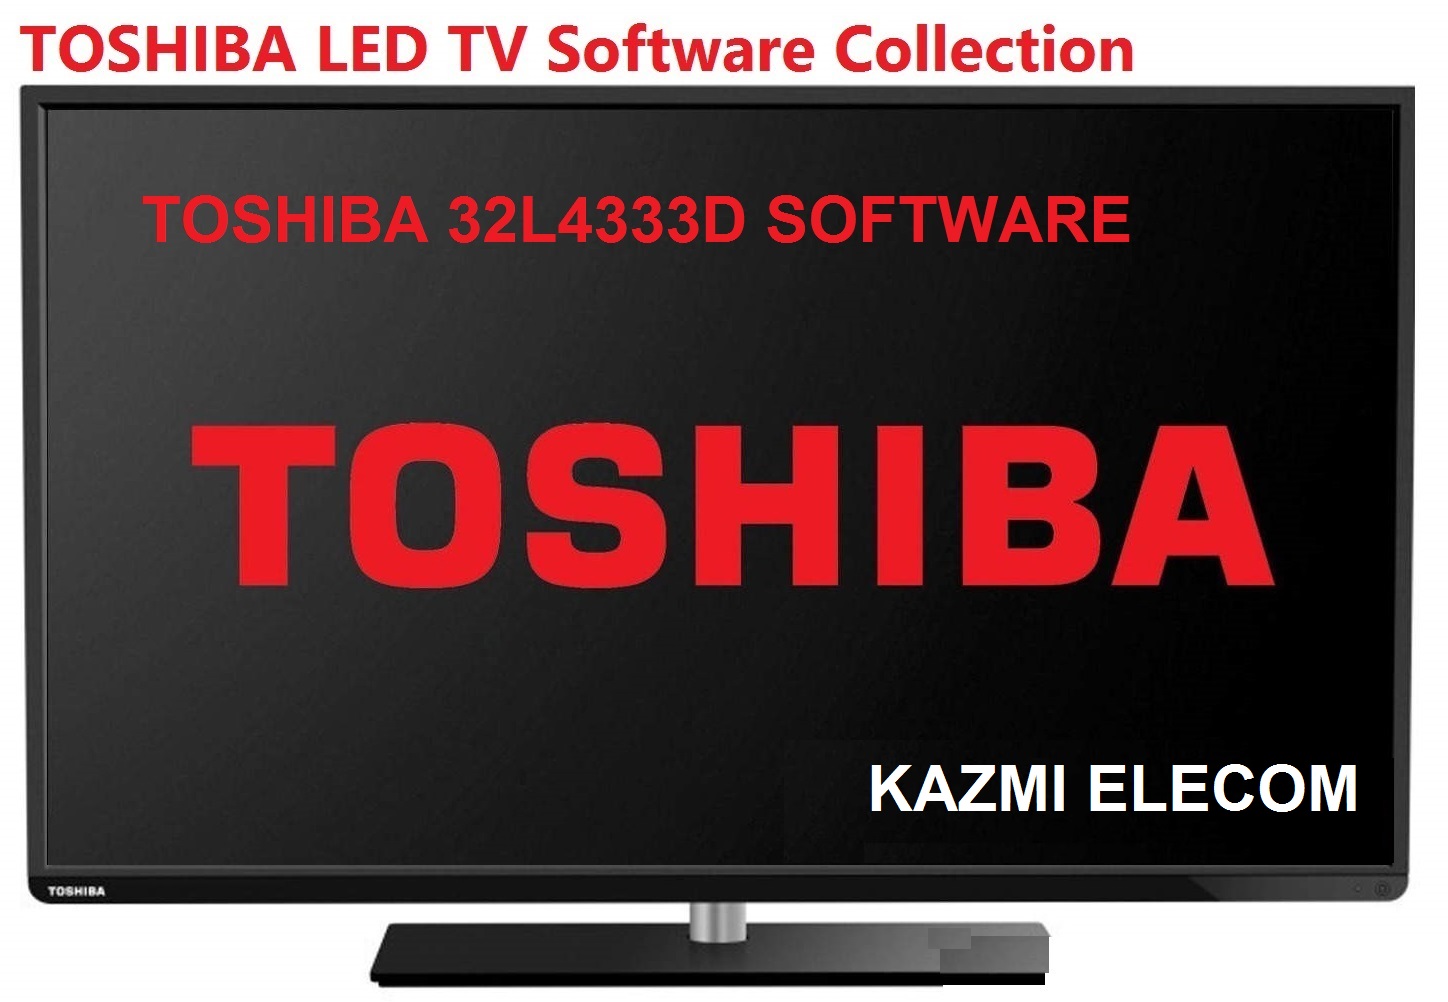 Toshiba 32L4333D